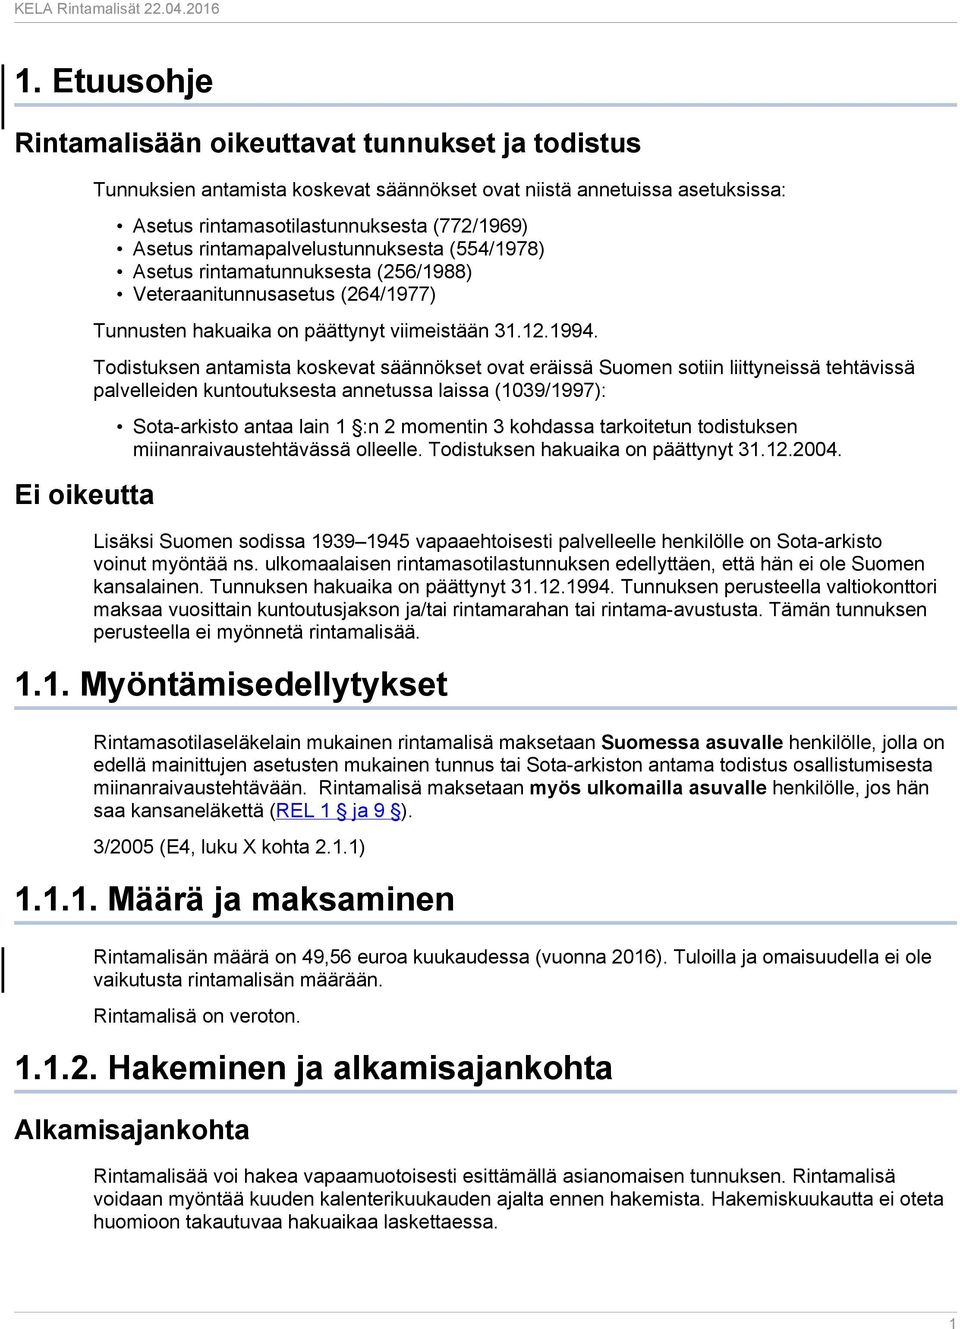 Todistuksen antamista koskevat säännökset ovat eräissä Suomen sotiin liittyneissä tehtävissä palvelleiden kuntoutuksesta annetussa laissa (1039/1997): Sota-arkisto antaa lain 1 :n 2 momentin 3